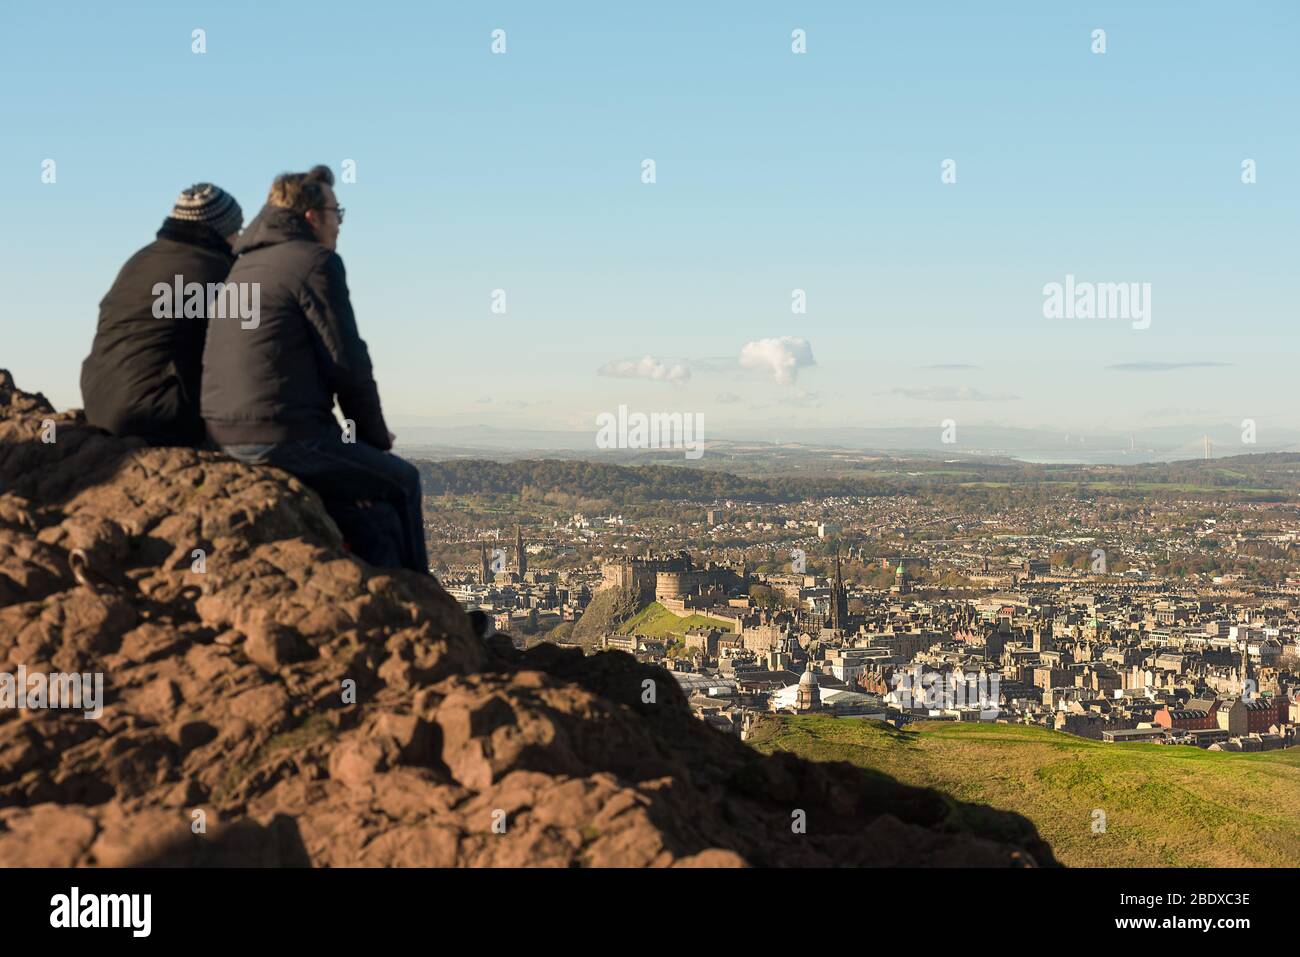 Un couple s'assoit au-dessus d'Arthurs Seat, un volcan en sommeil, en regardant la ville d'Edimbourg et le château d'Édimbourg, en Écosse. Banque D'Images